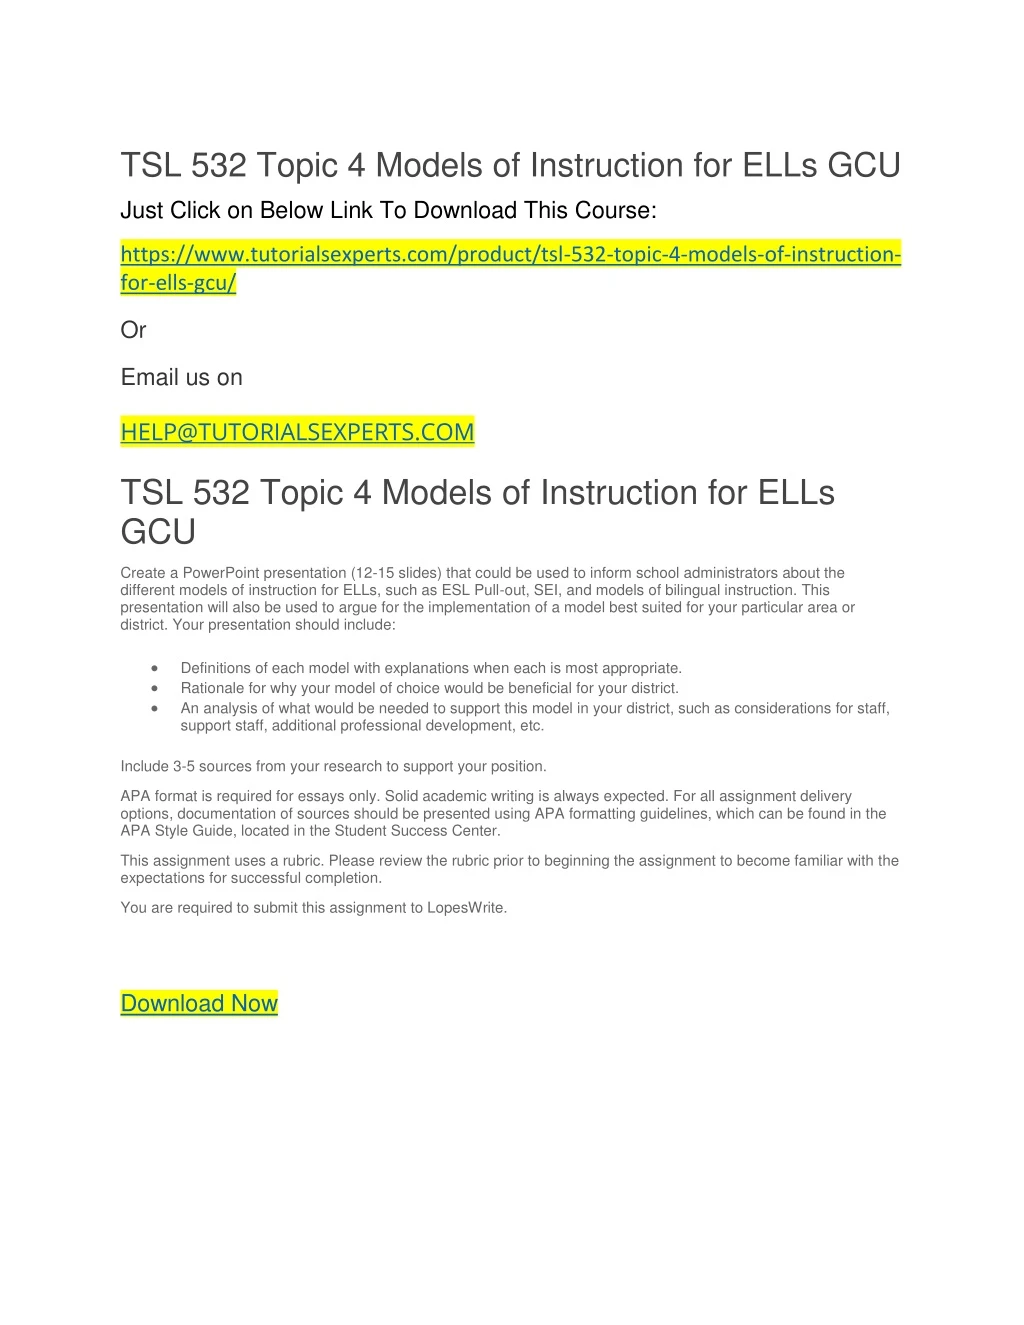 tsl 532 topic 4 models of instruction for ells gcu